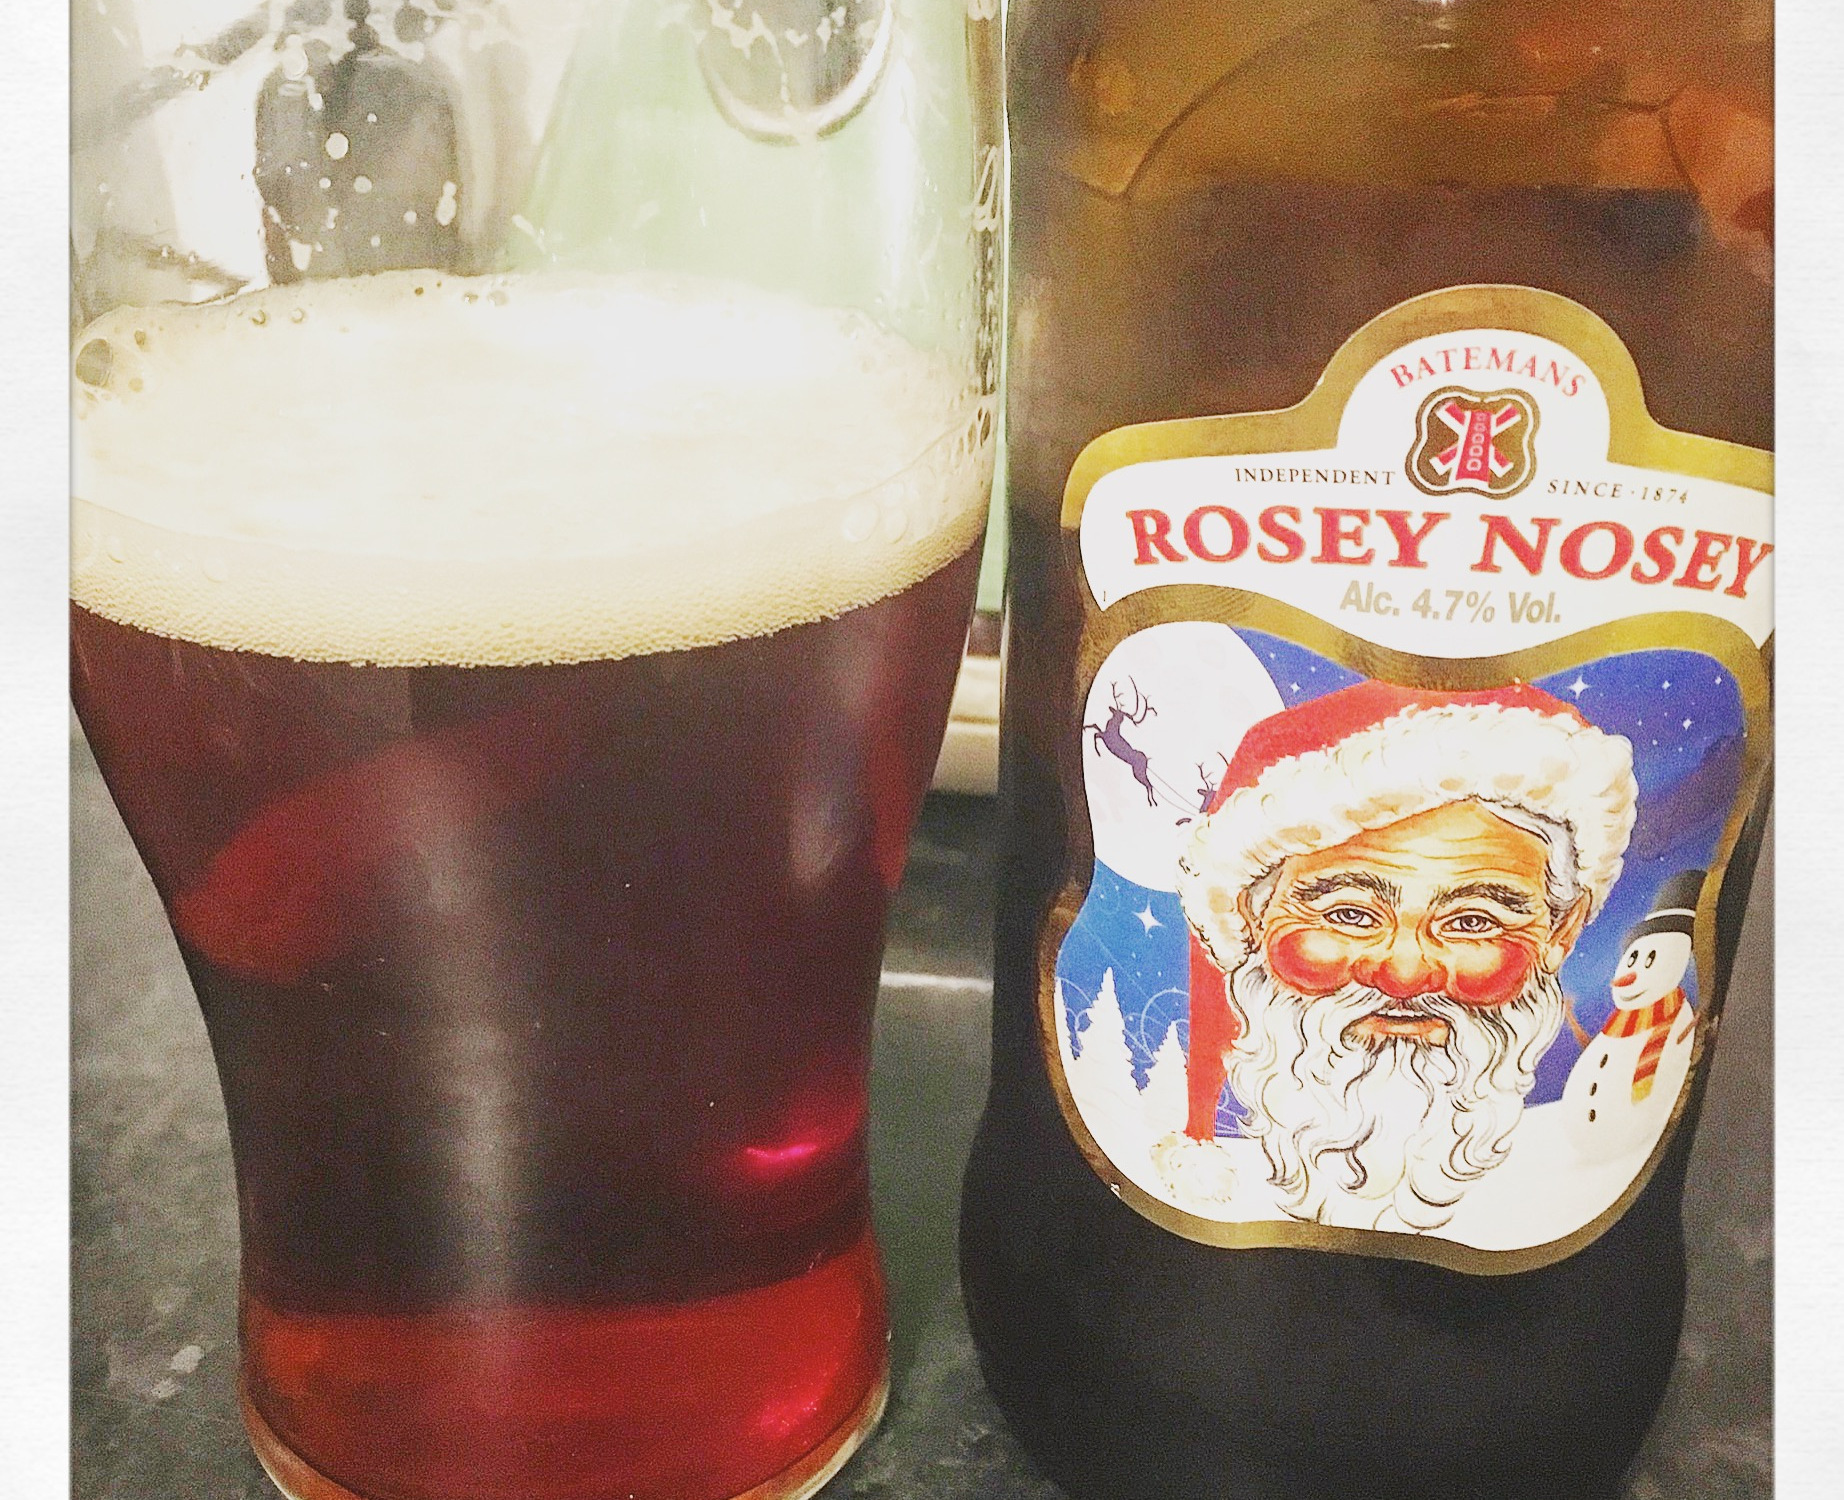 Bateman's Rosey Nosey Beer